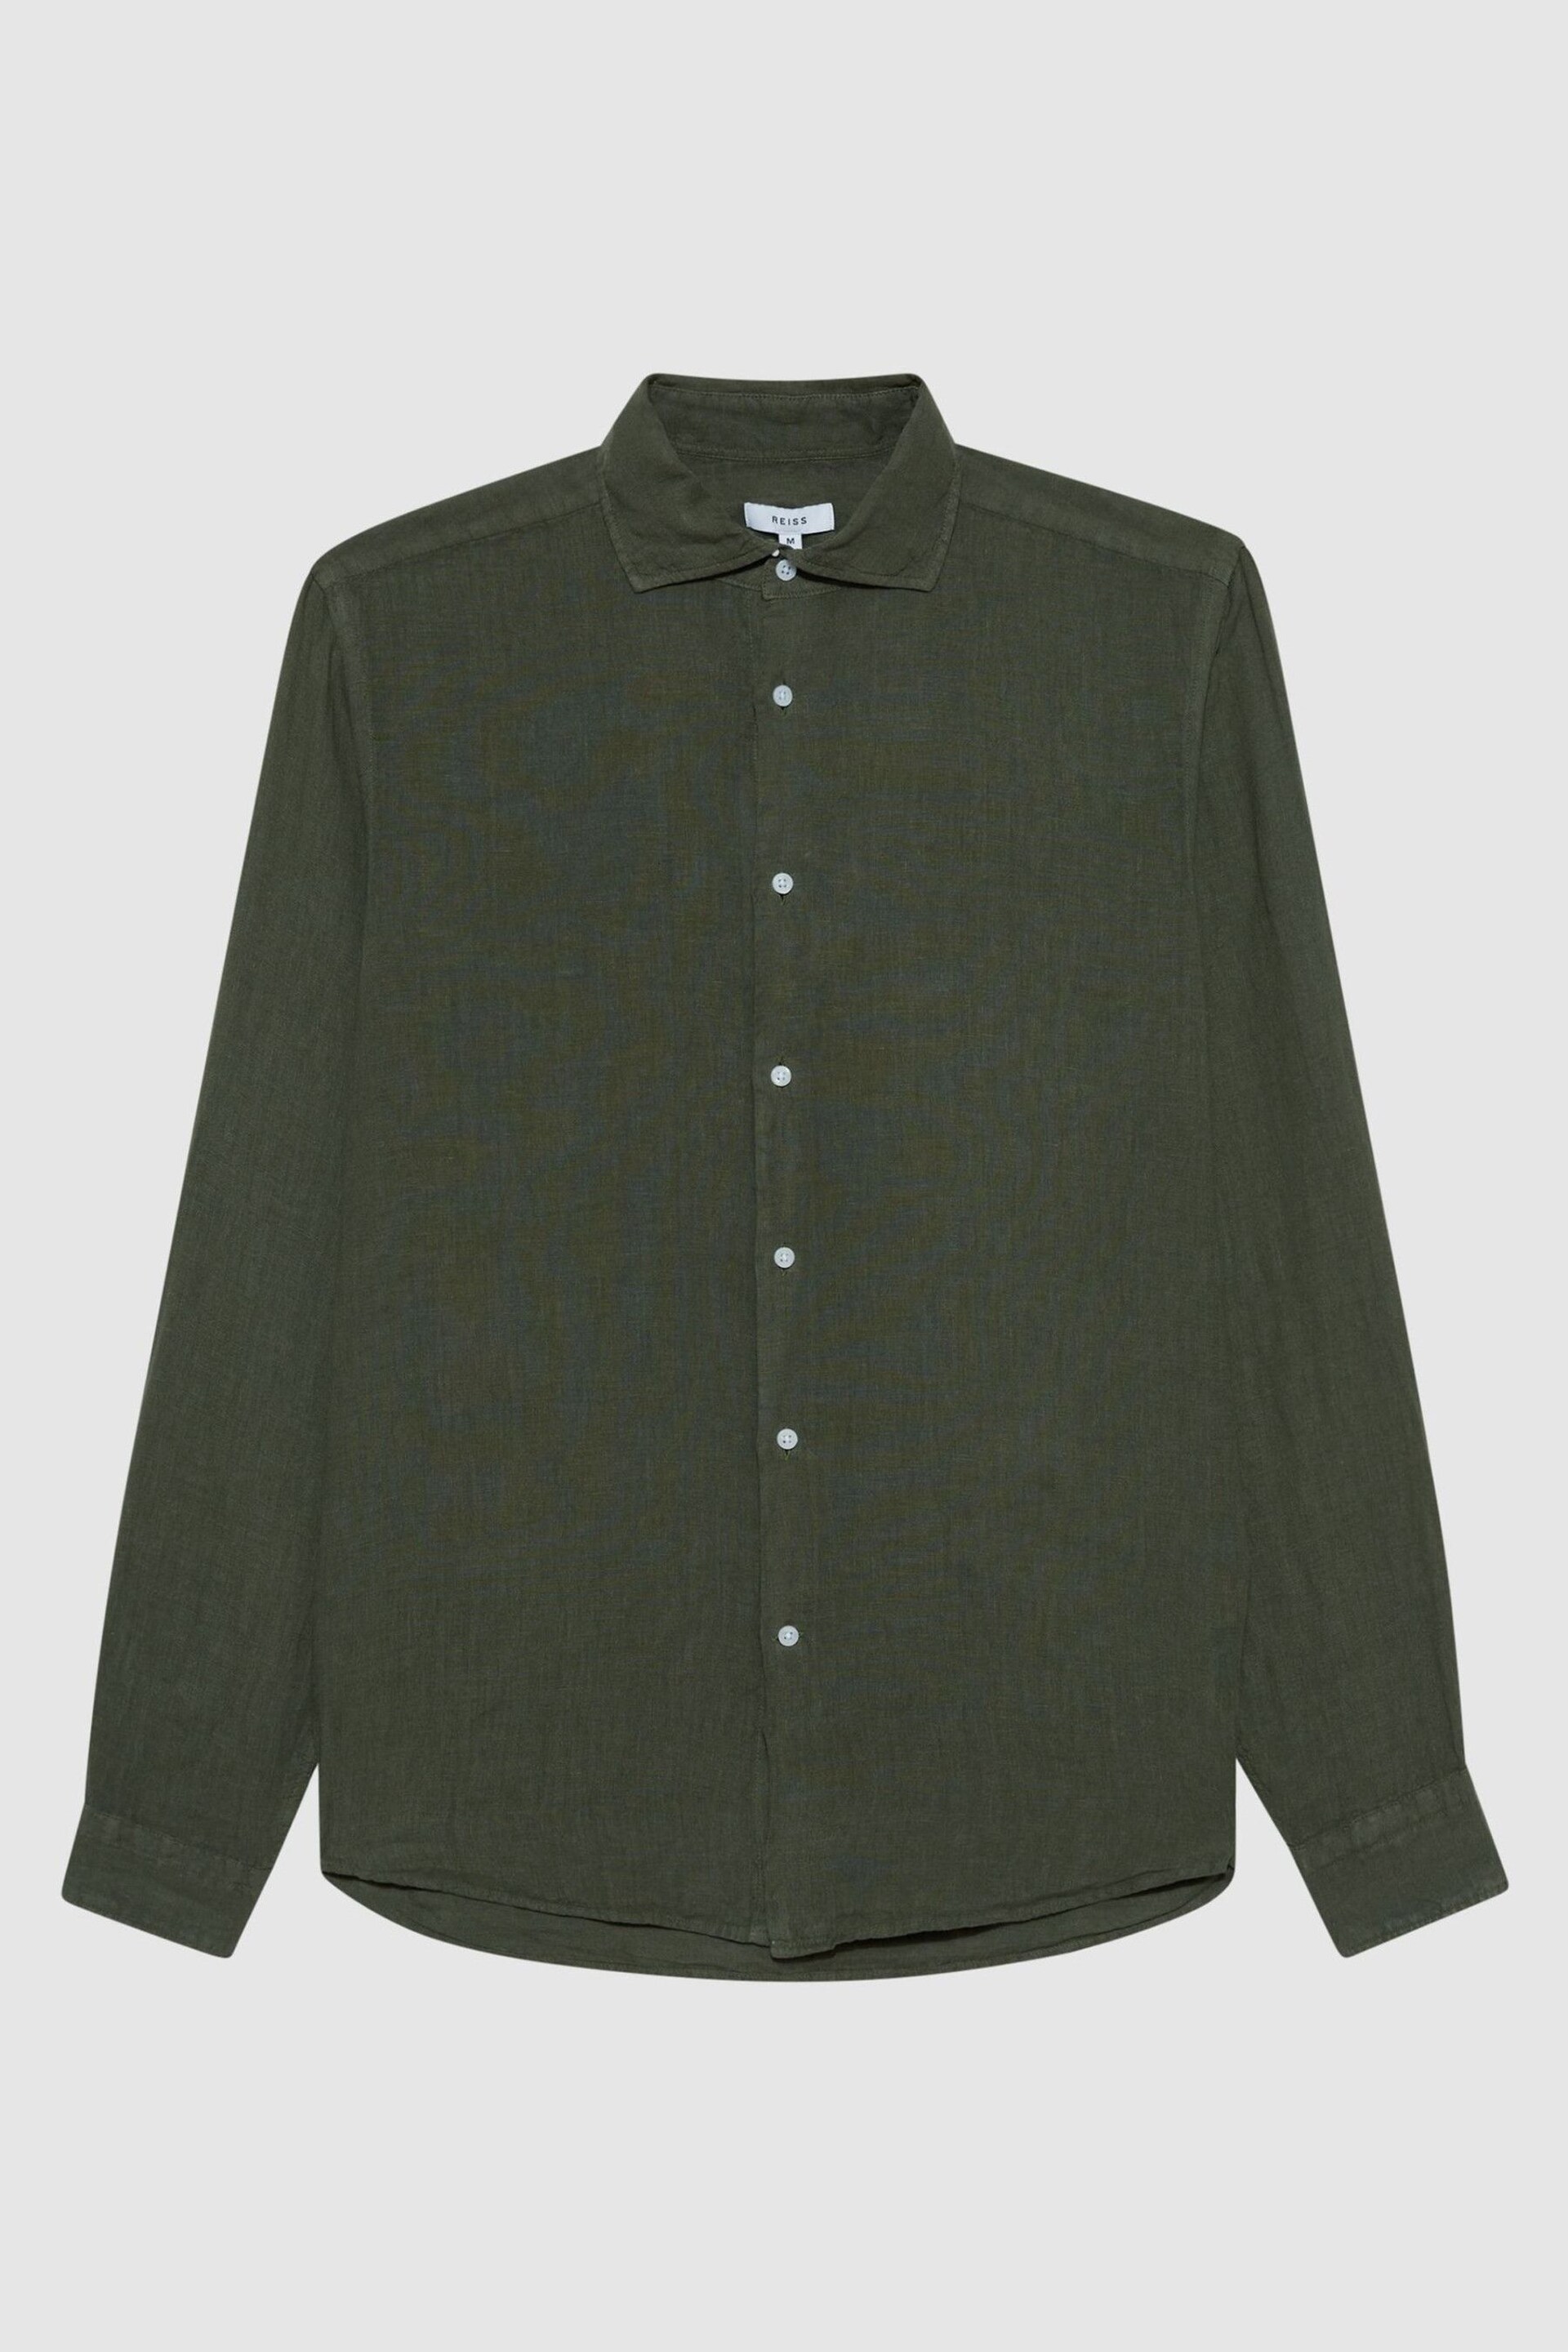 Reiss Olive Ruban Linen Button-Through Shirt - Image 2 of 2